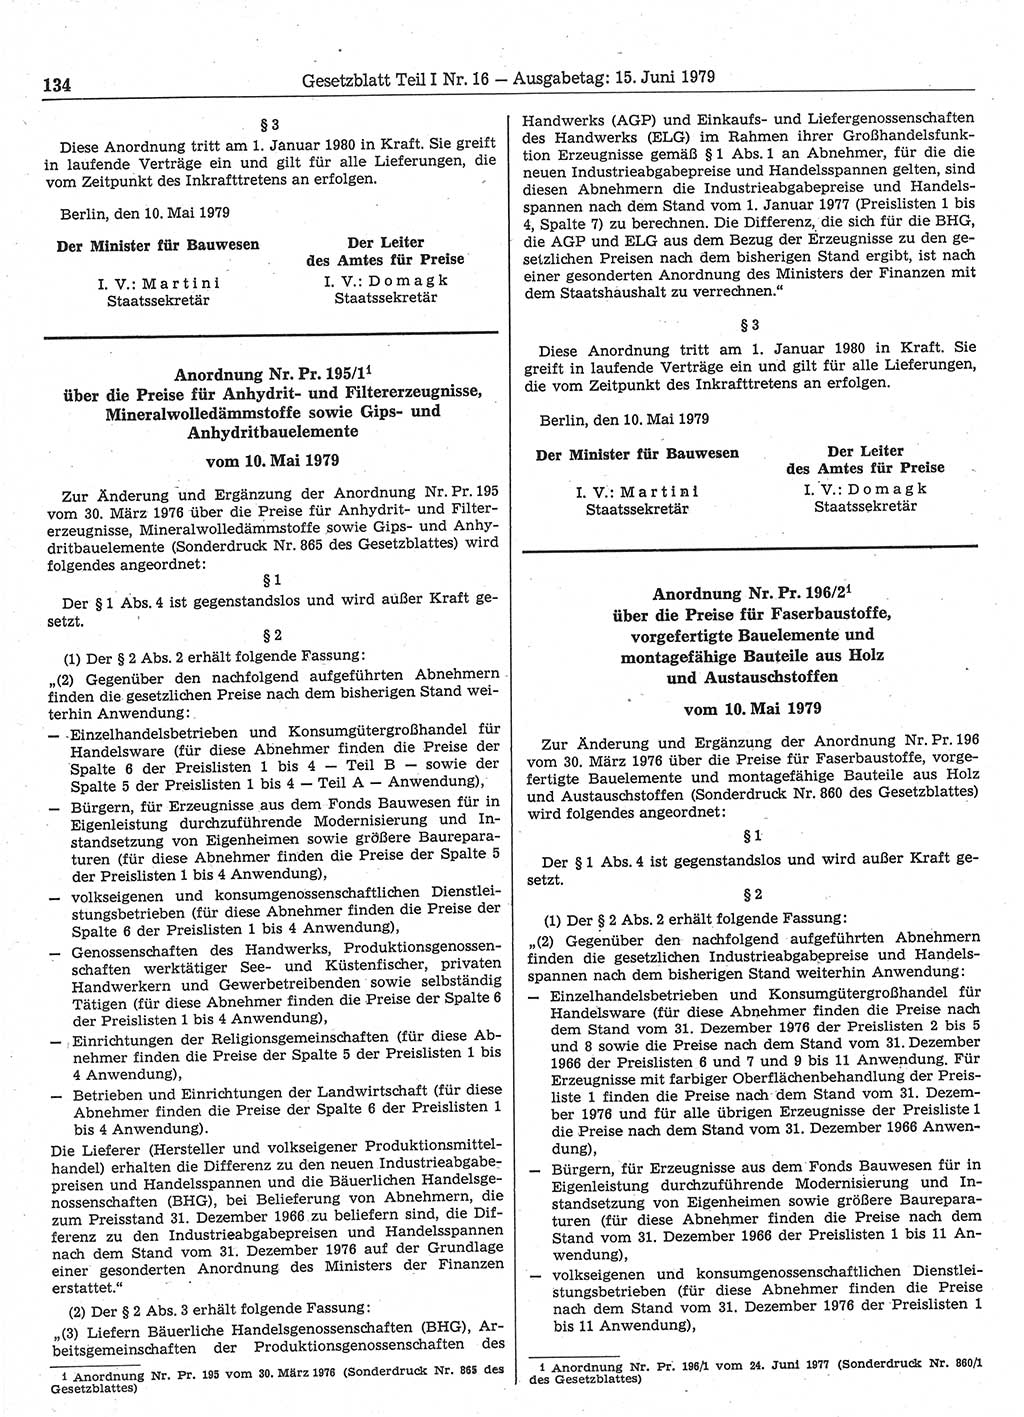 Gesetzblatt (GBl.) der Deutschen Demokratischen Republik (DDR) Teil Ⅰ 1979, Seite 134 (GBl. DDR Ⅰ 1979, S. 134)